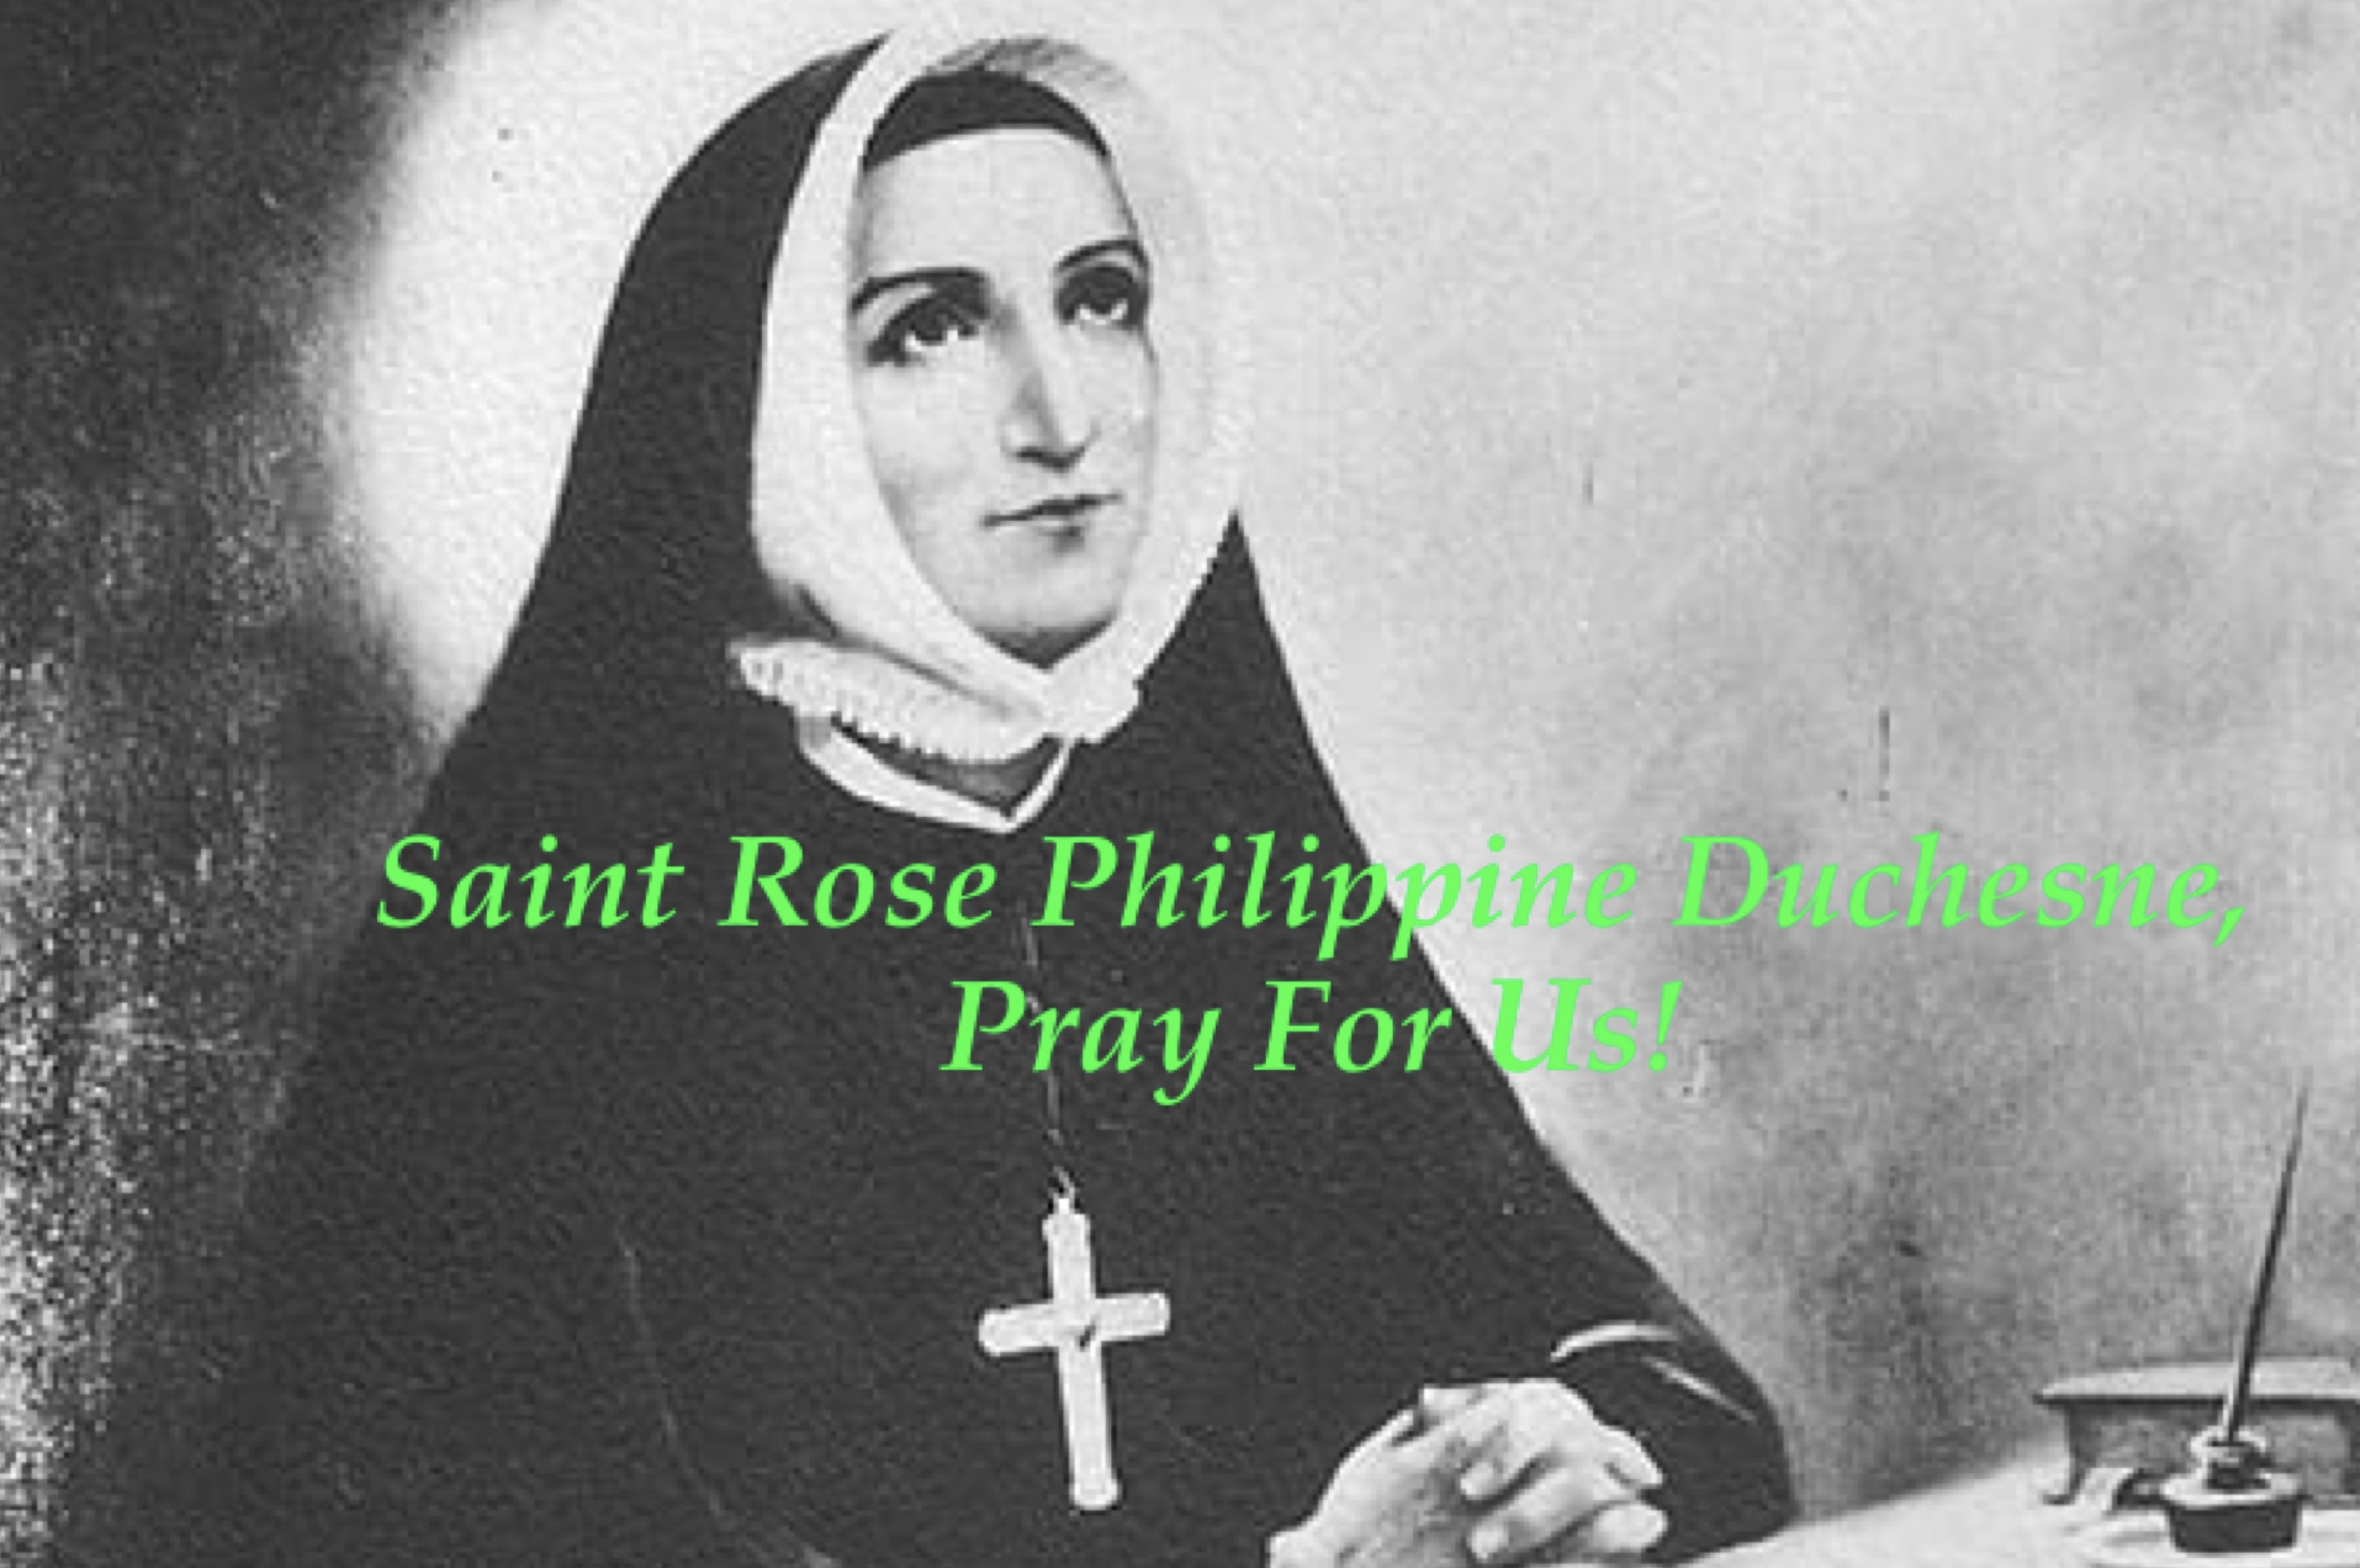 18th November - Saint Rose Philippine Duchesne